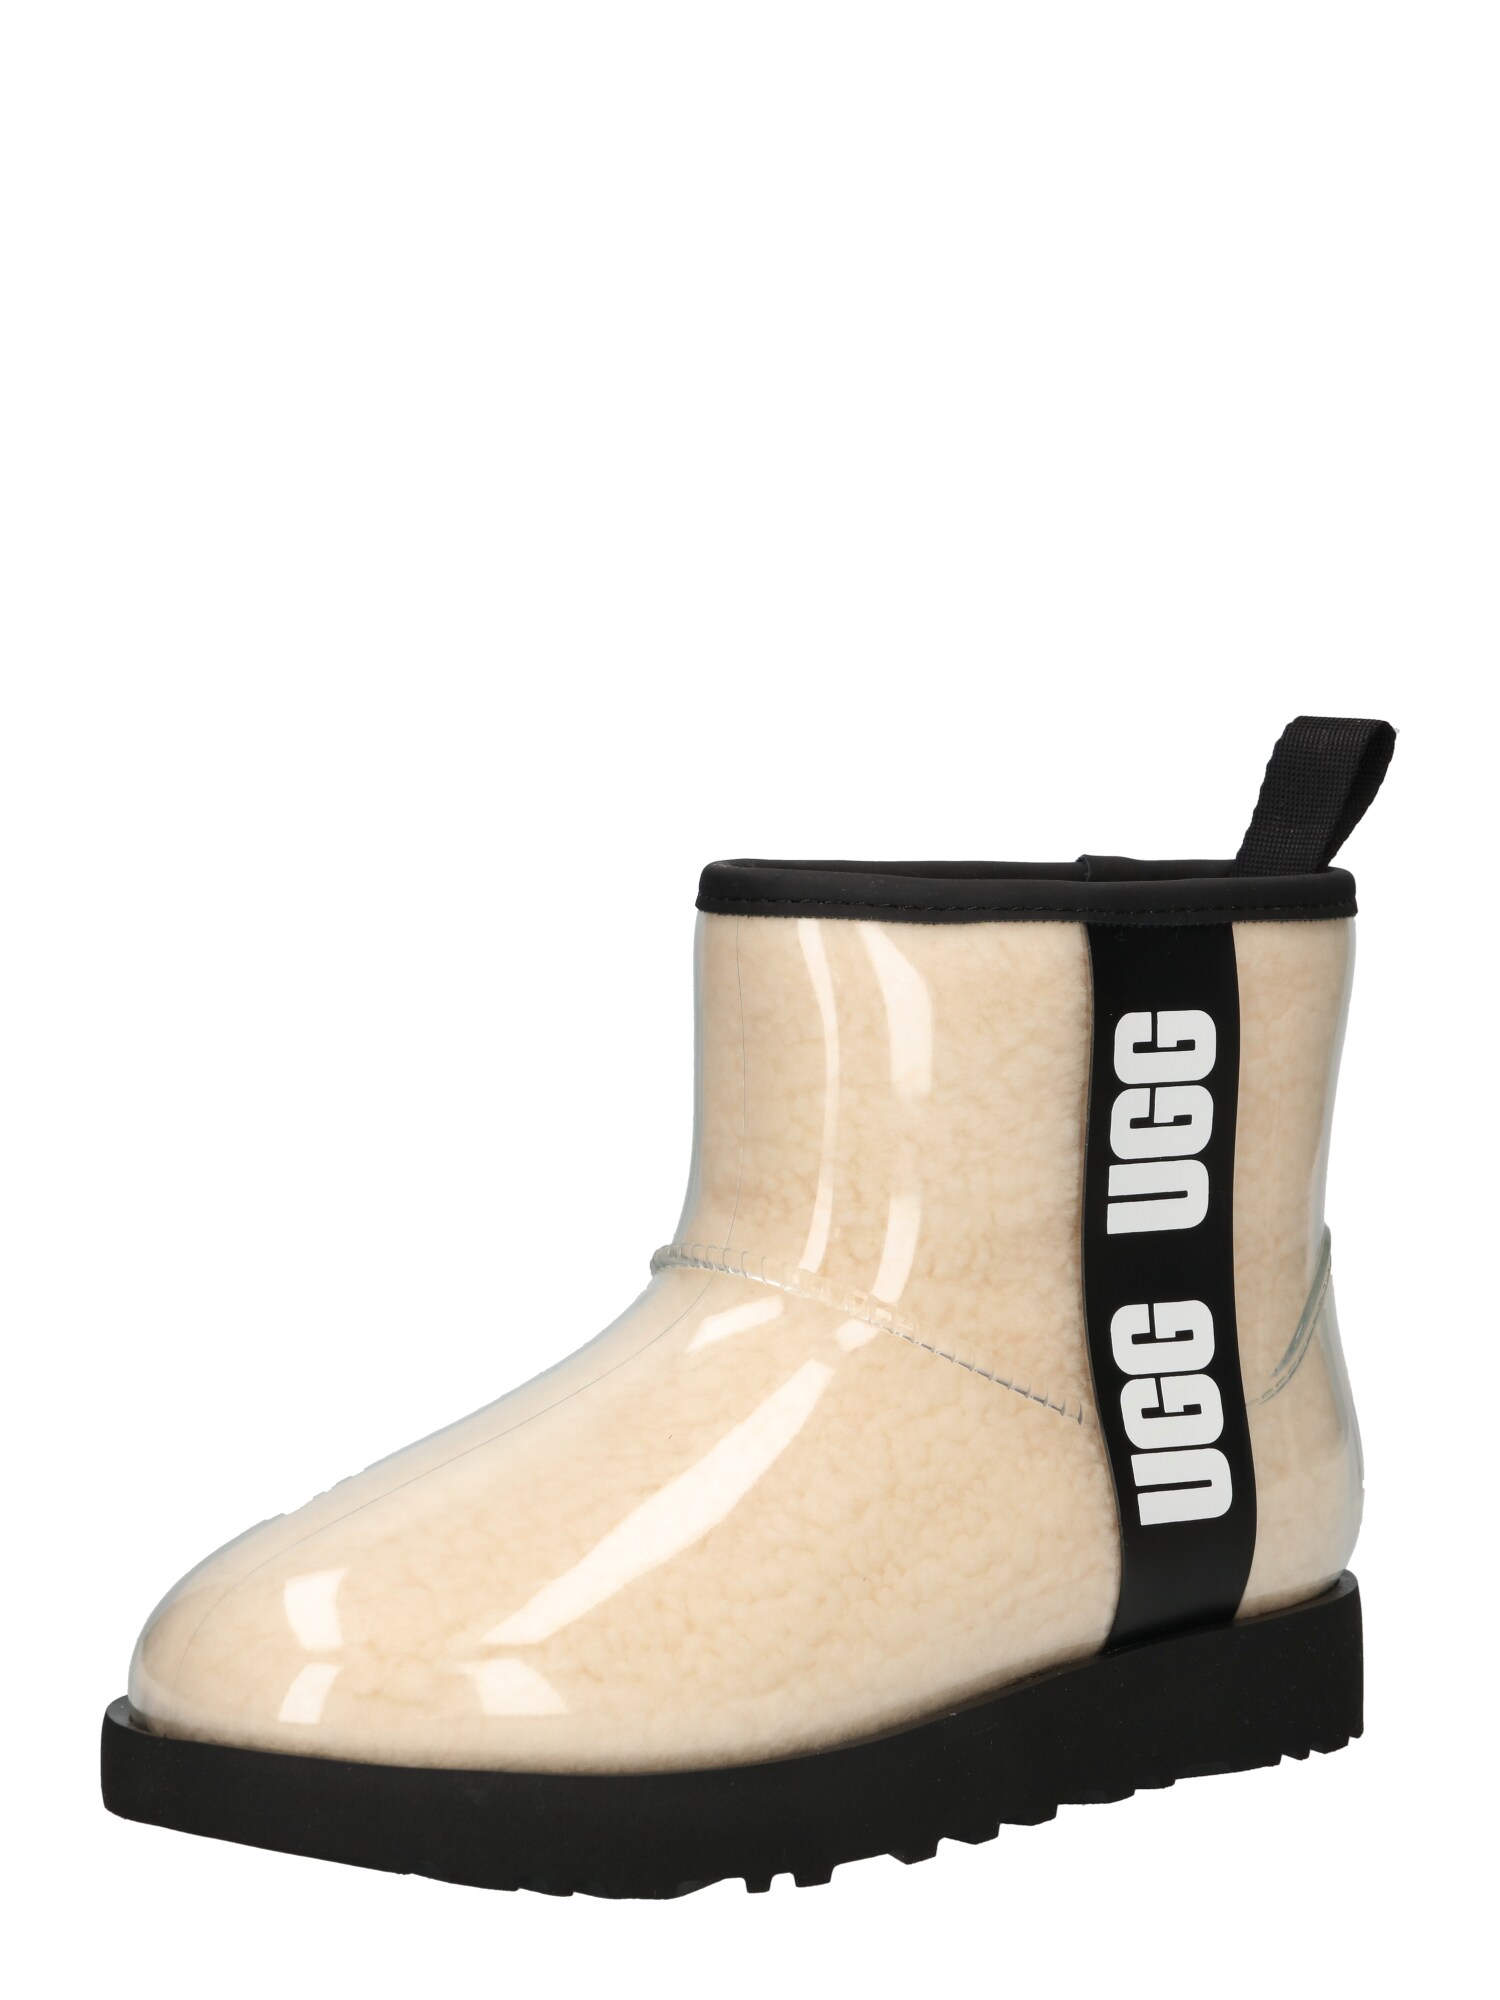 Ugg UGG Snowboots hellbeige / schwarz / weiß